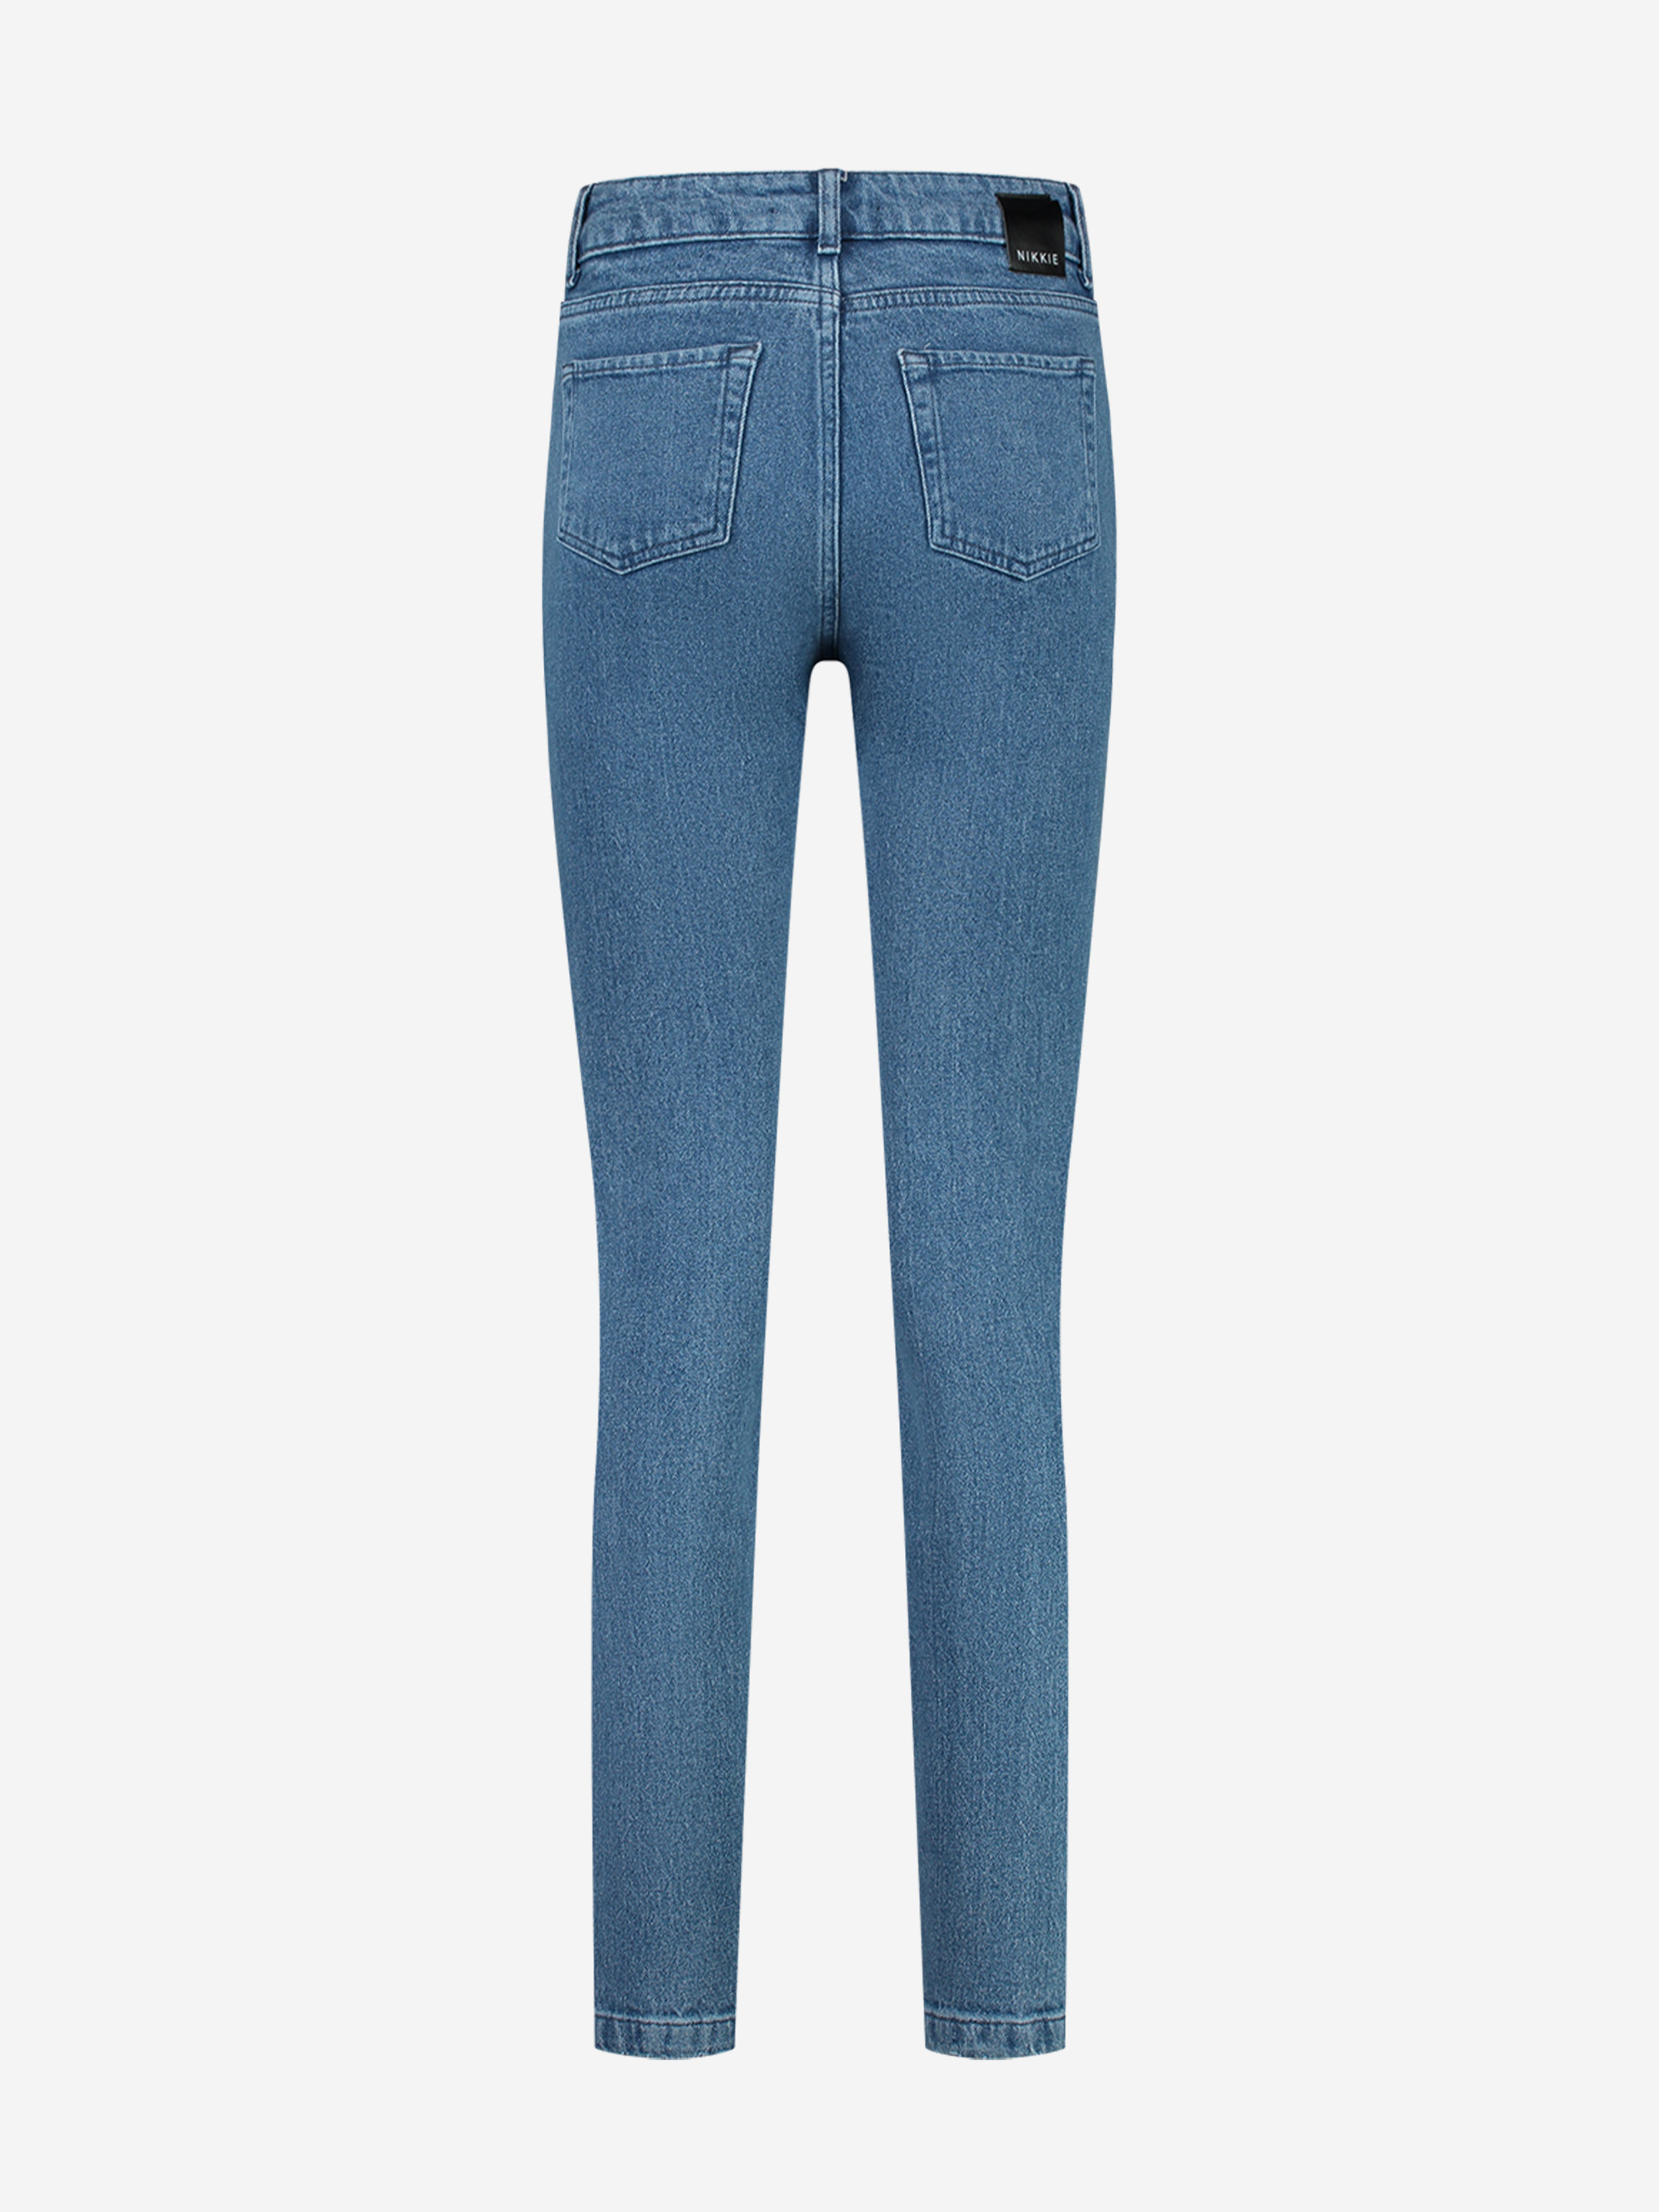 Bellflower Skinny Jeans